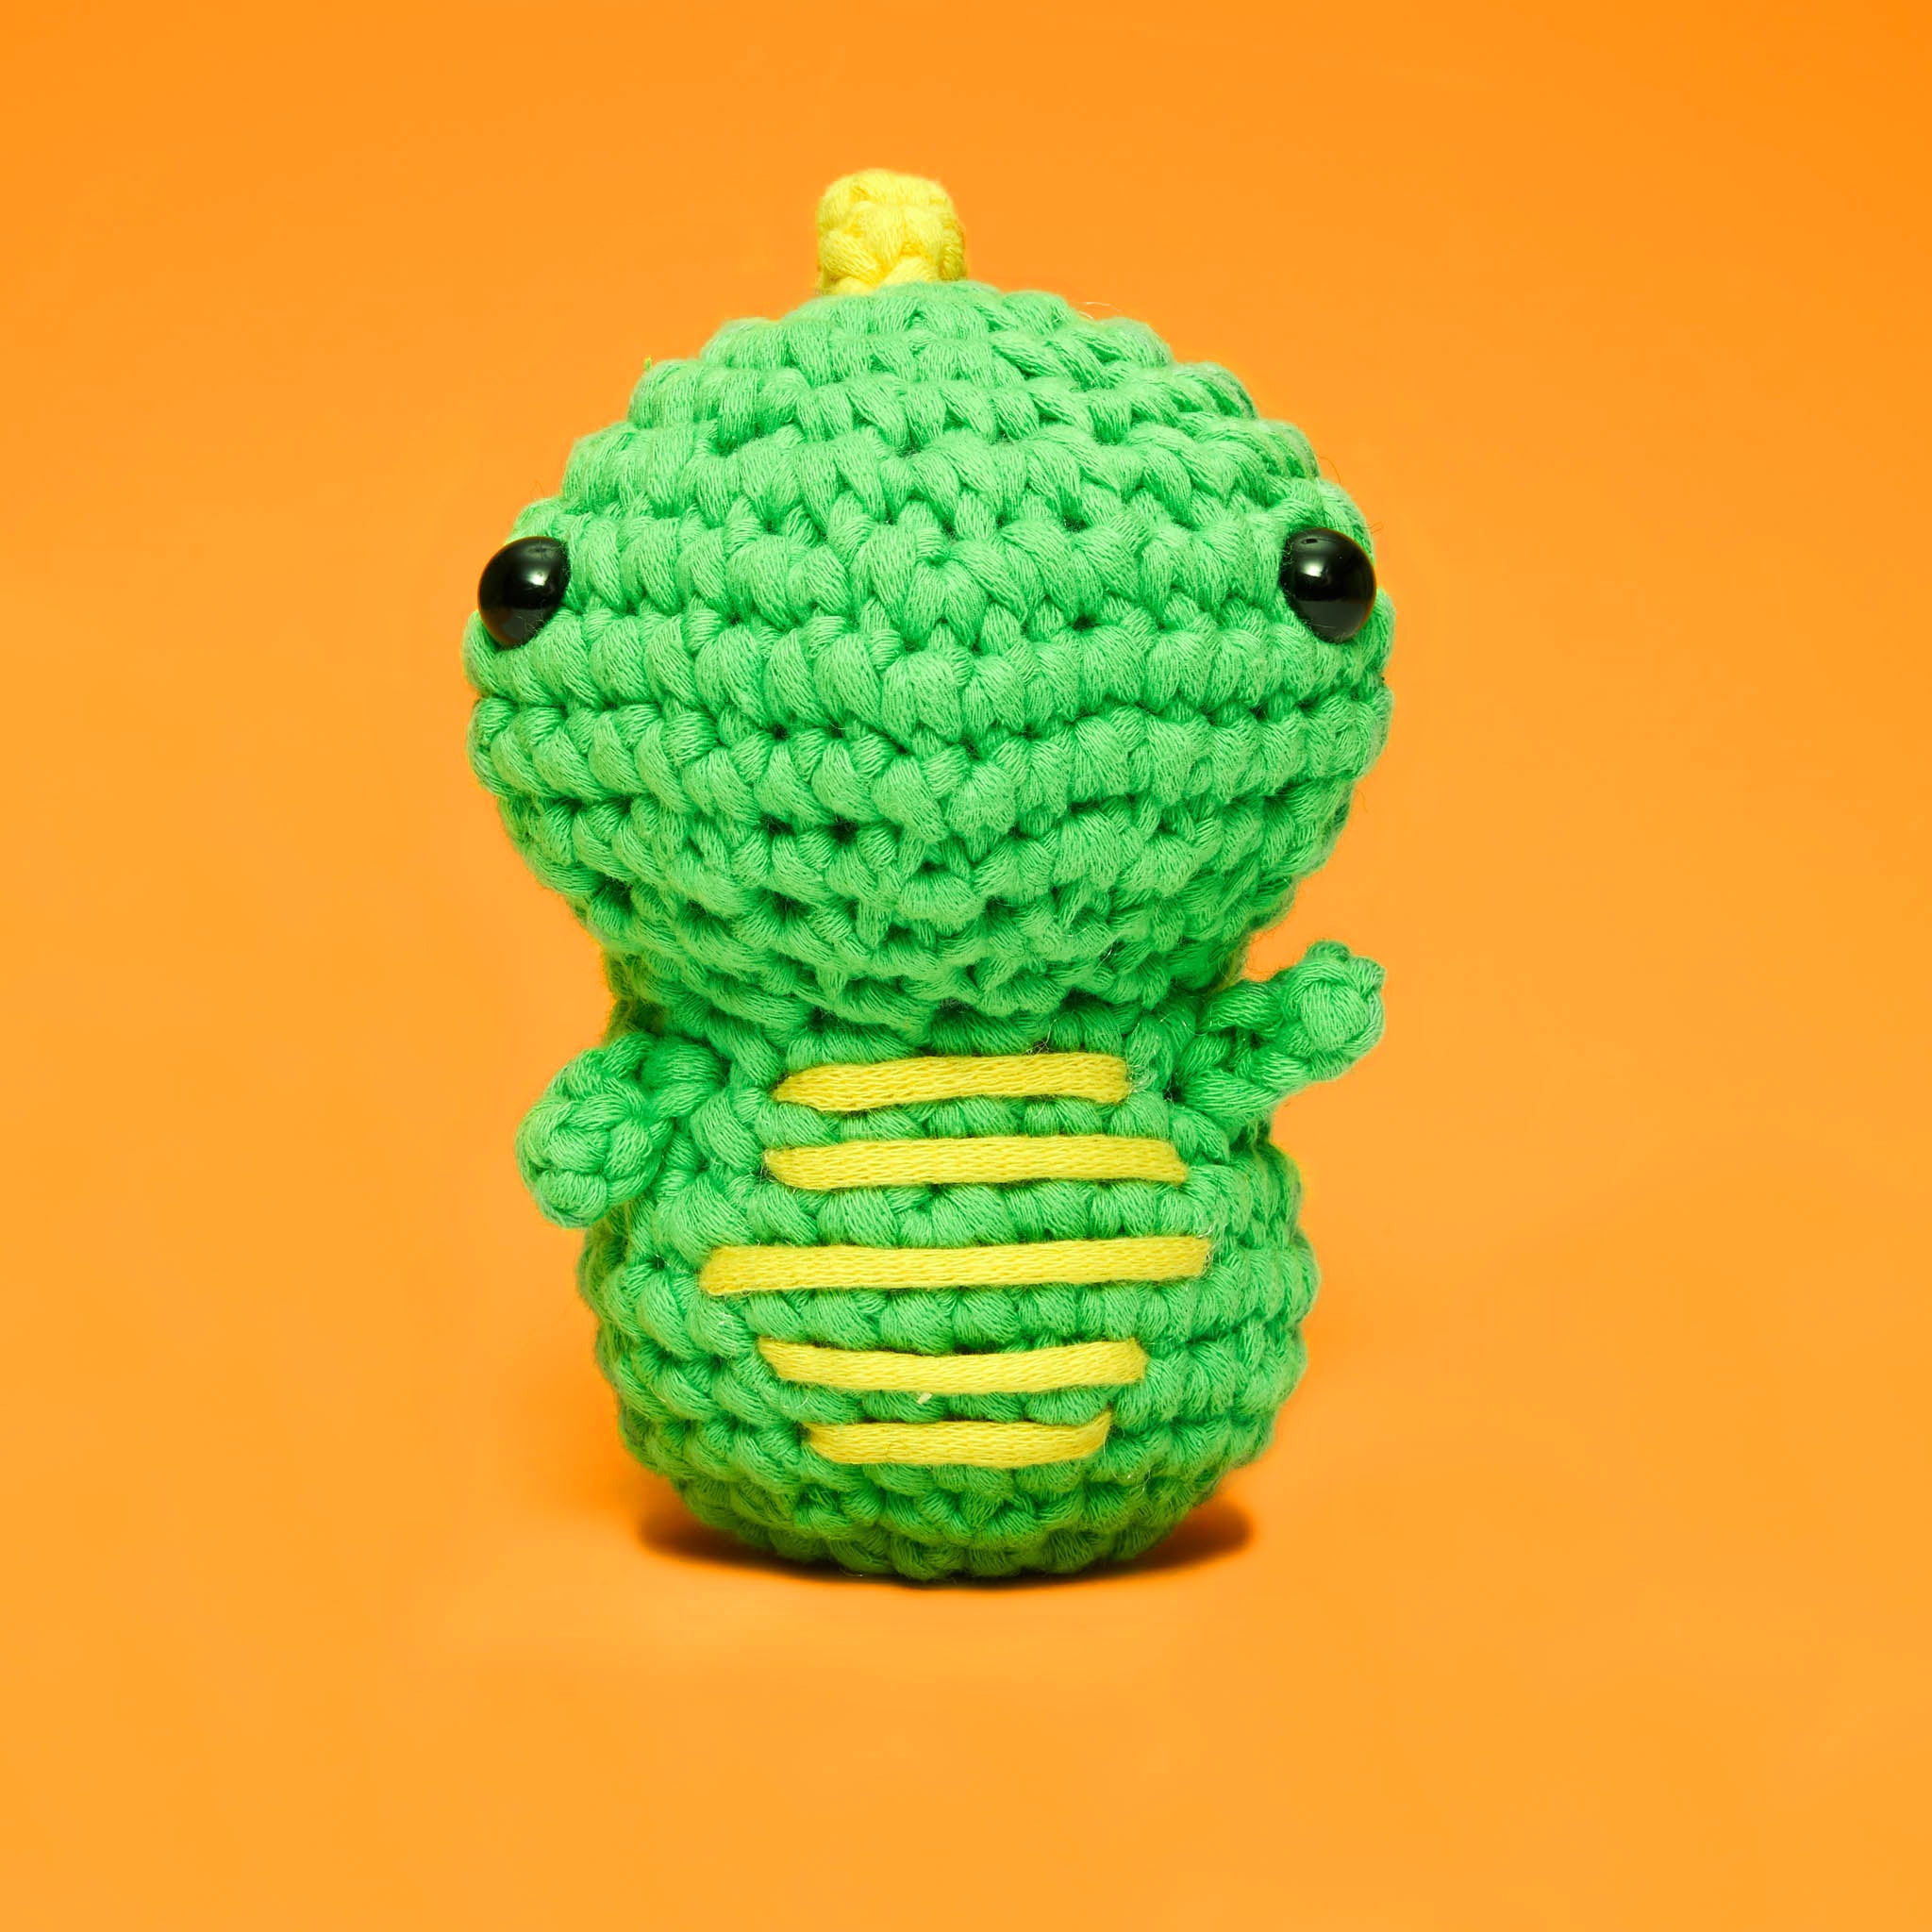 Beginner Crochet Kit Dinosaurs Learn How to Crochet Kit Easy Starter Crochet  Kit Amigurumi Kit DIY Craft Kit Gift -  UK